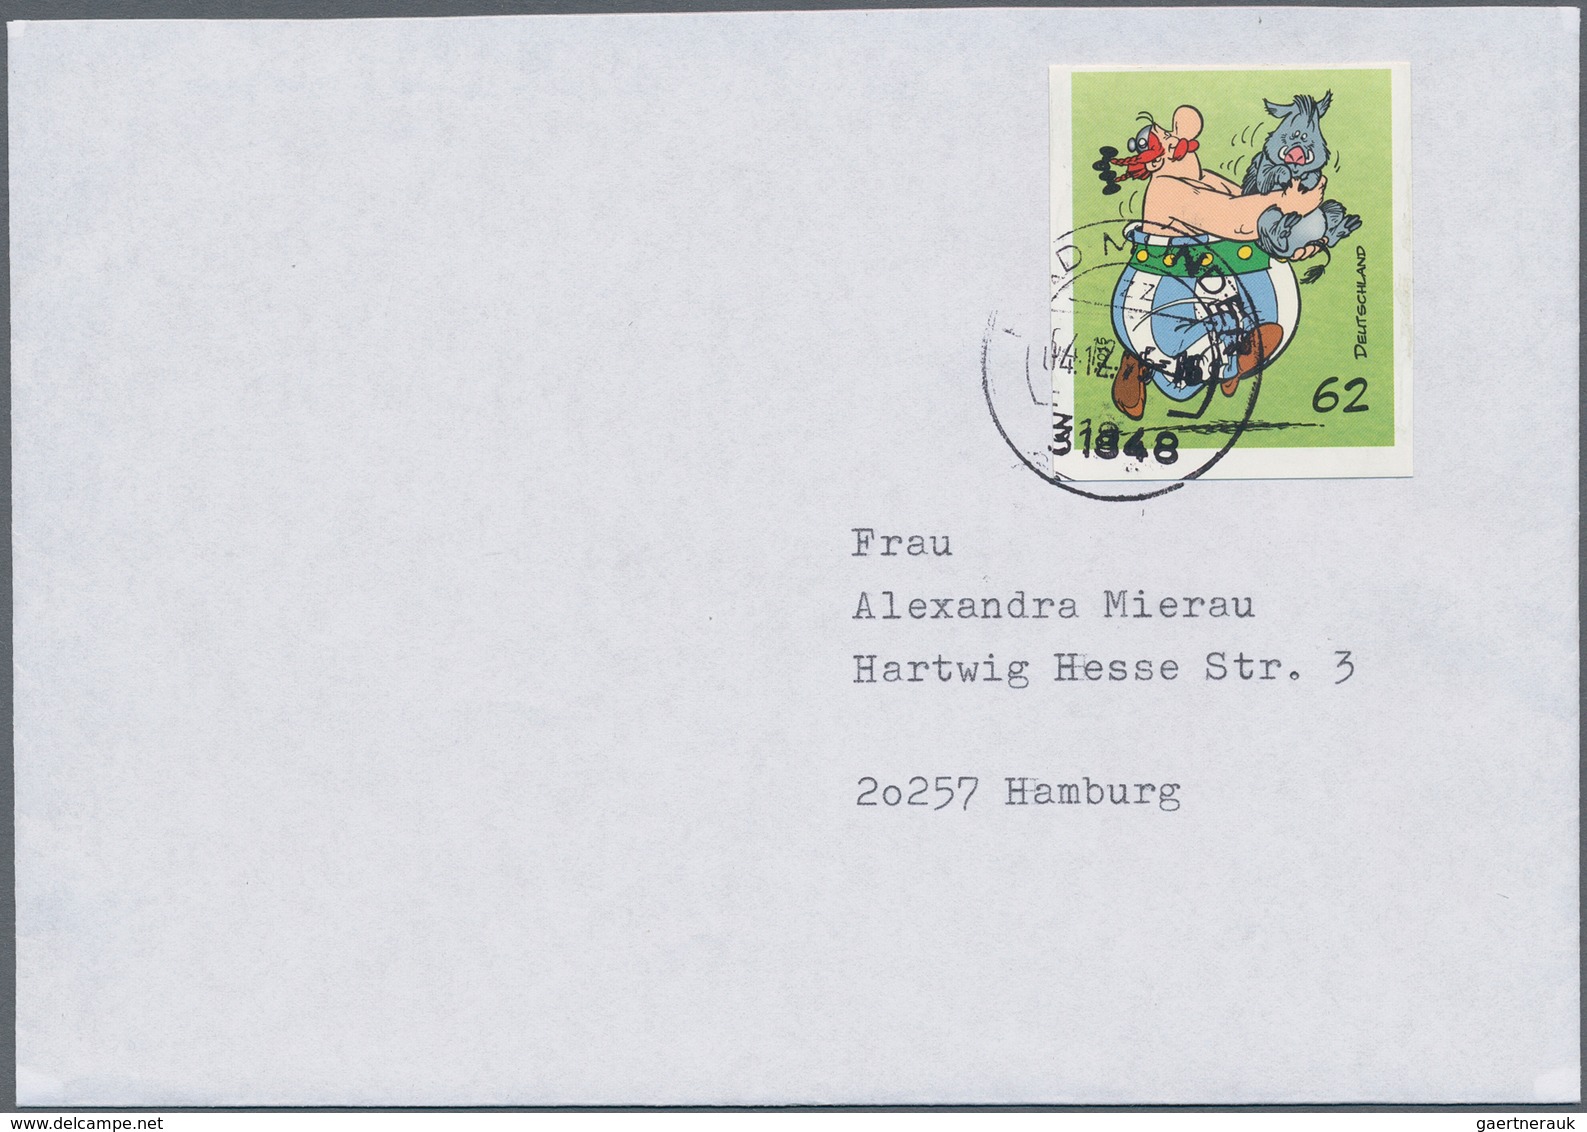 Bundesrepublik Deutschland: 2015, sechs Briefe mit Marken aus Markenheftchen Asterix ungestanzt, dab